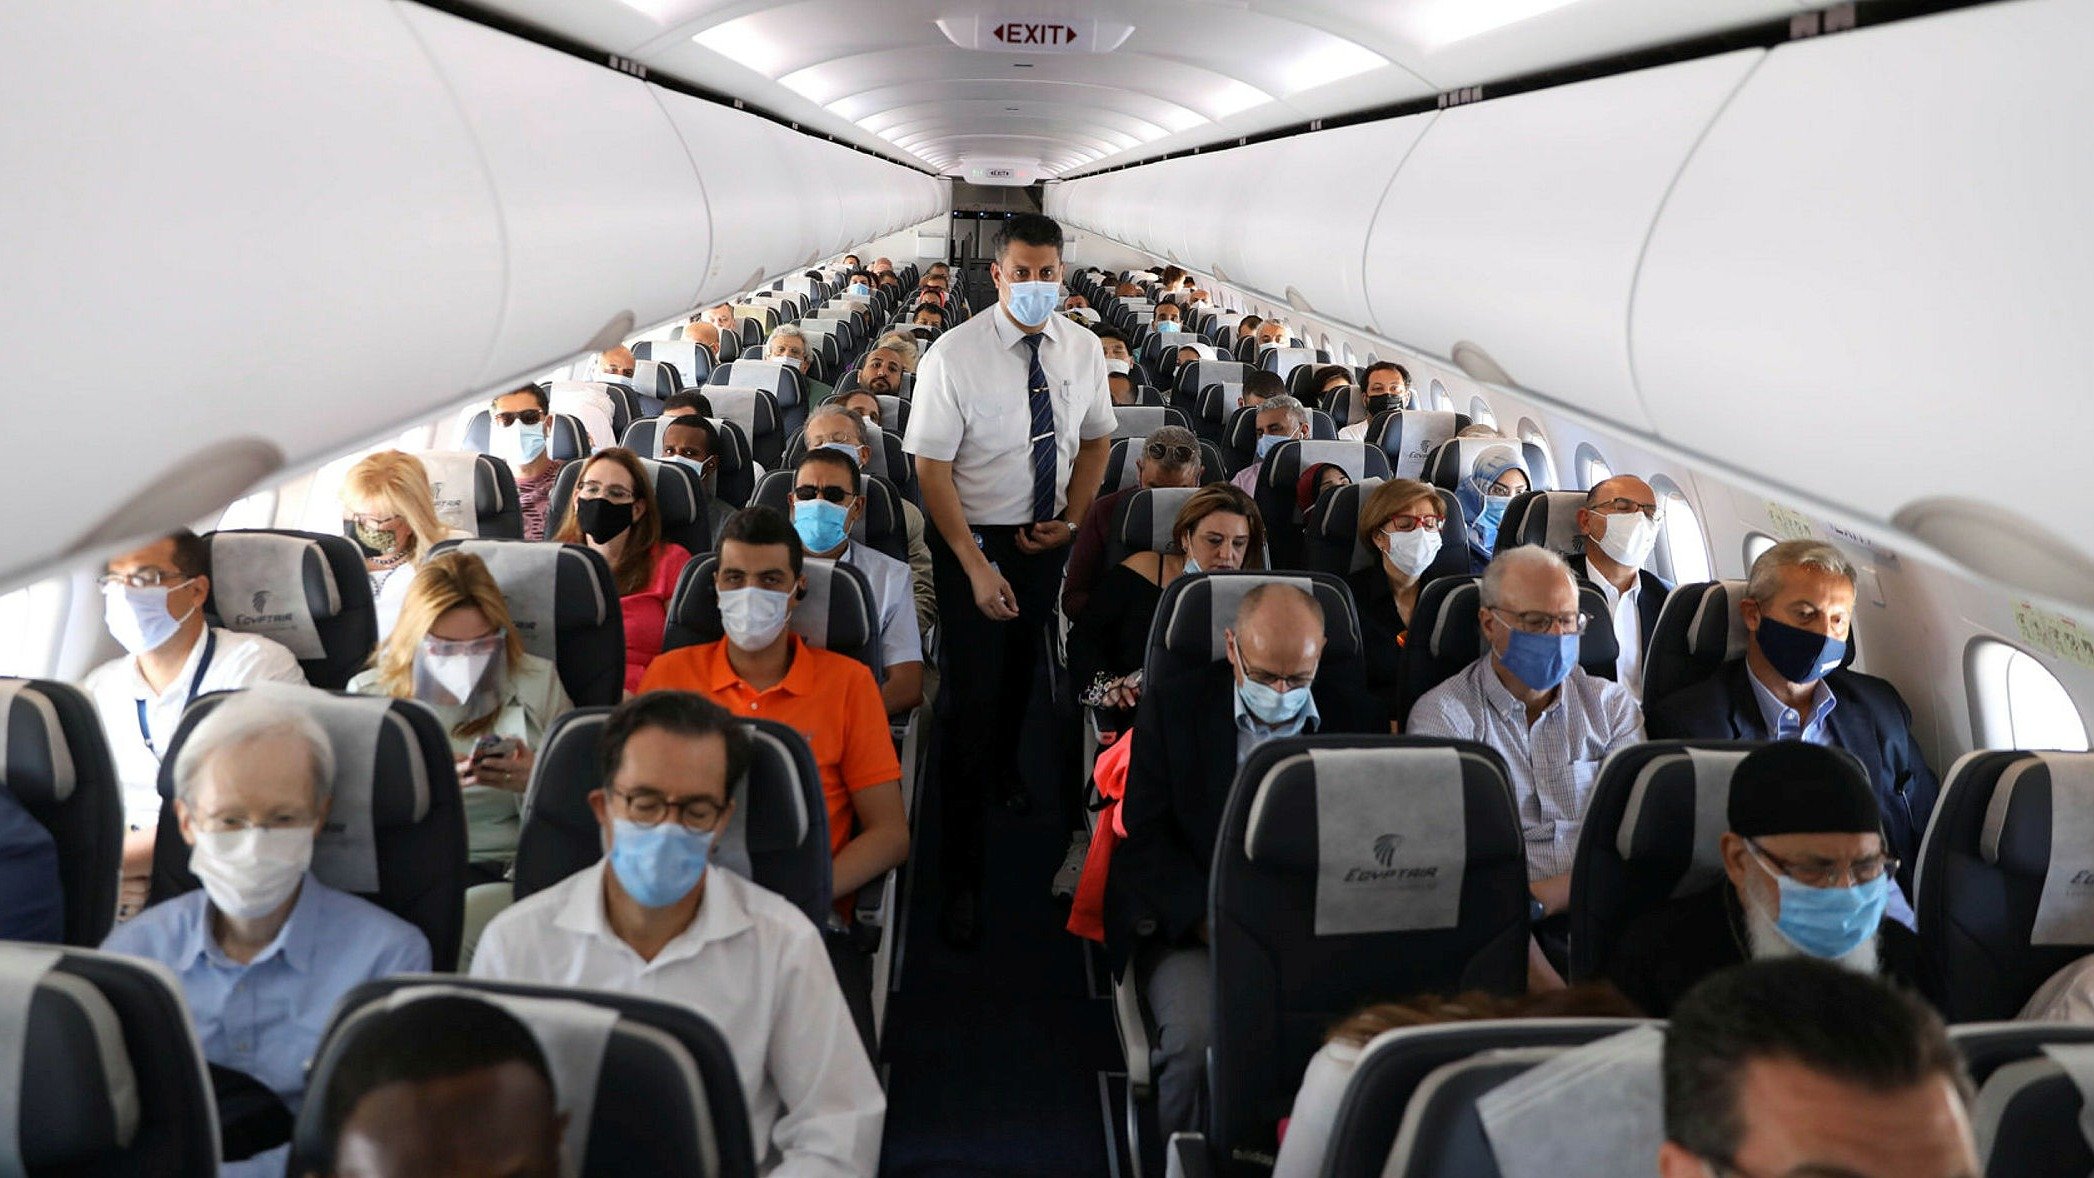 يصر اتحاد النقل الجوي الدولي (IATA) على أن مقصورة الطائرة هي `` بيئة منخفضة المخاطر '' لـ COVID-19